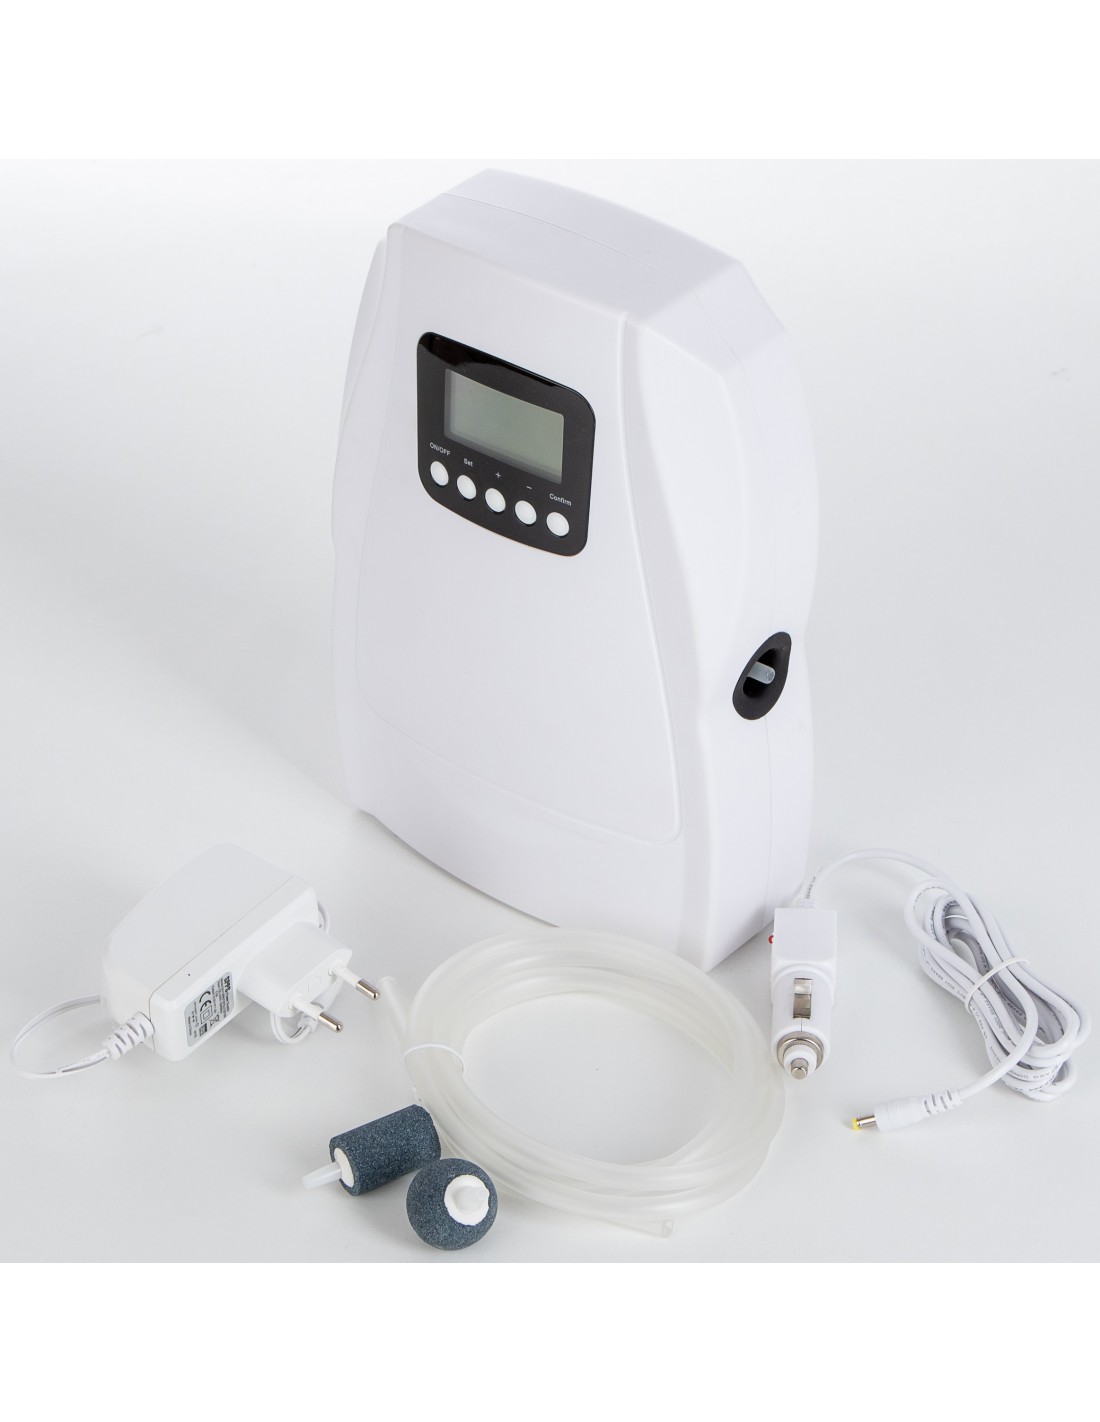 Ozonizador de agua o aire Water Master de 400mg/h barato